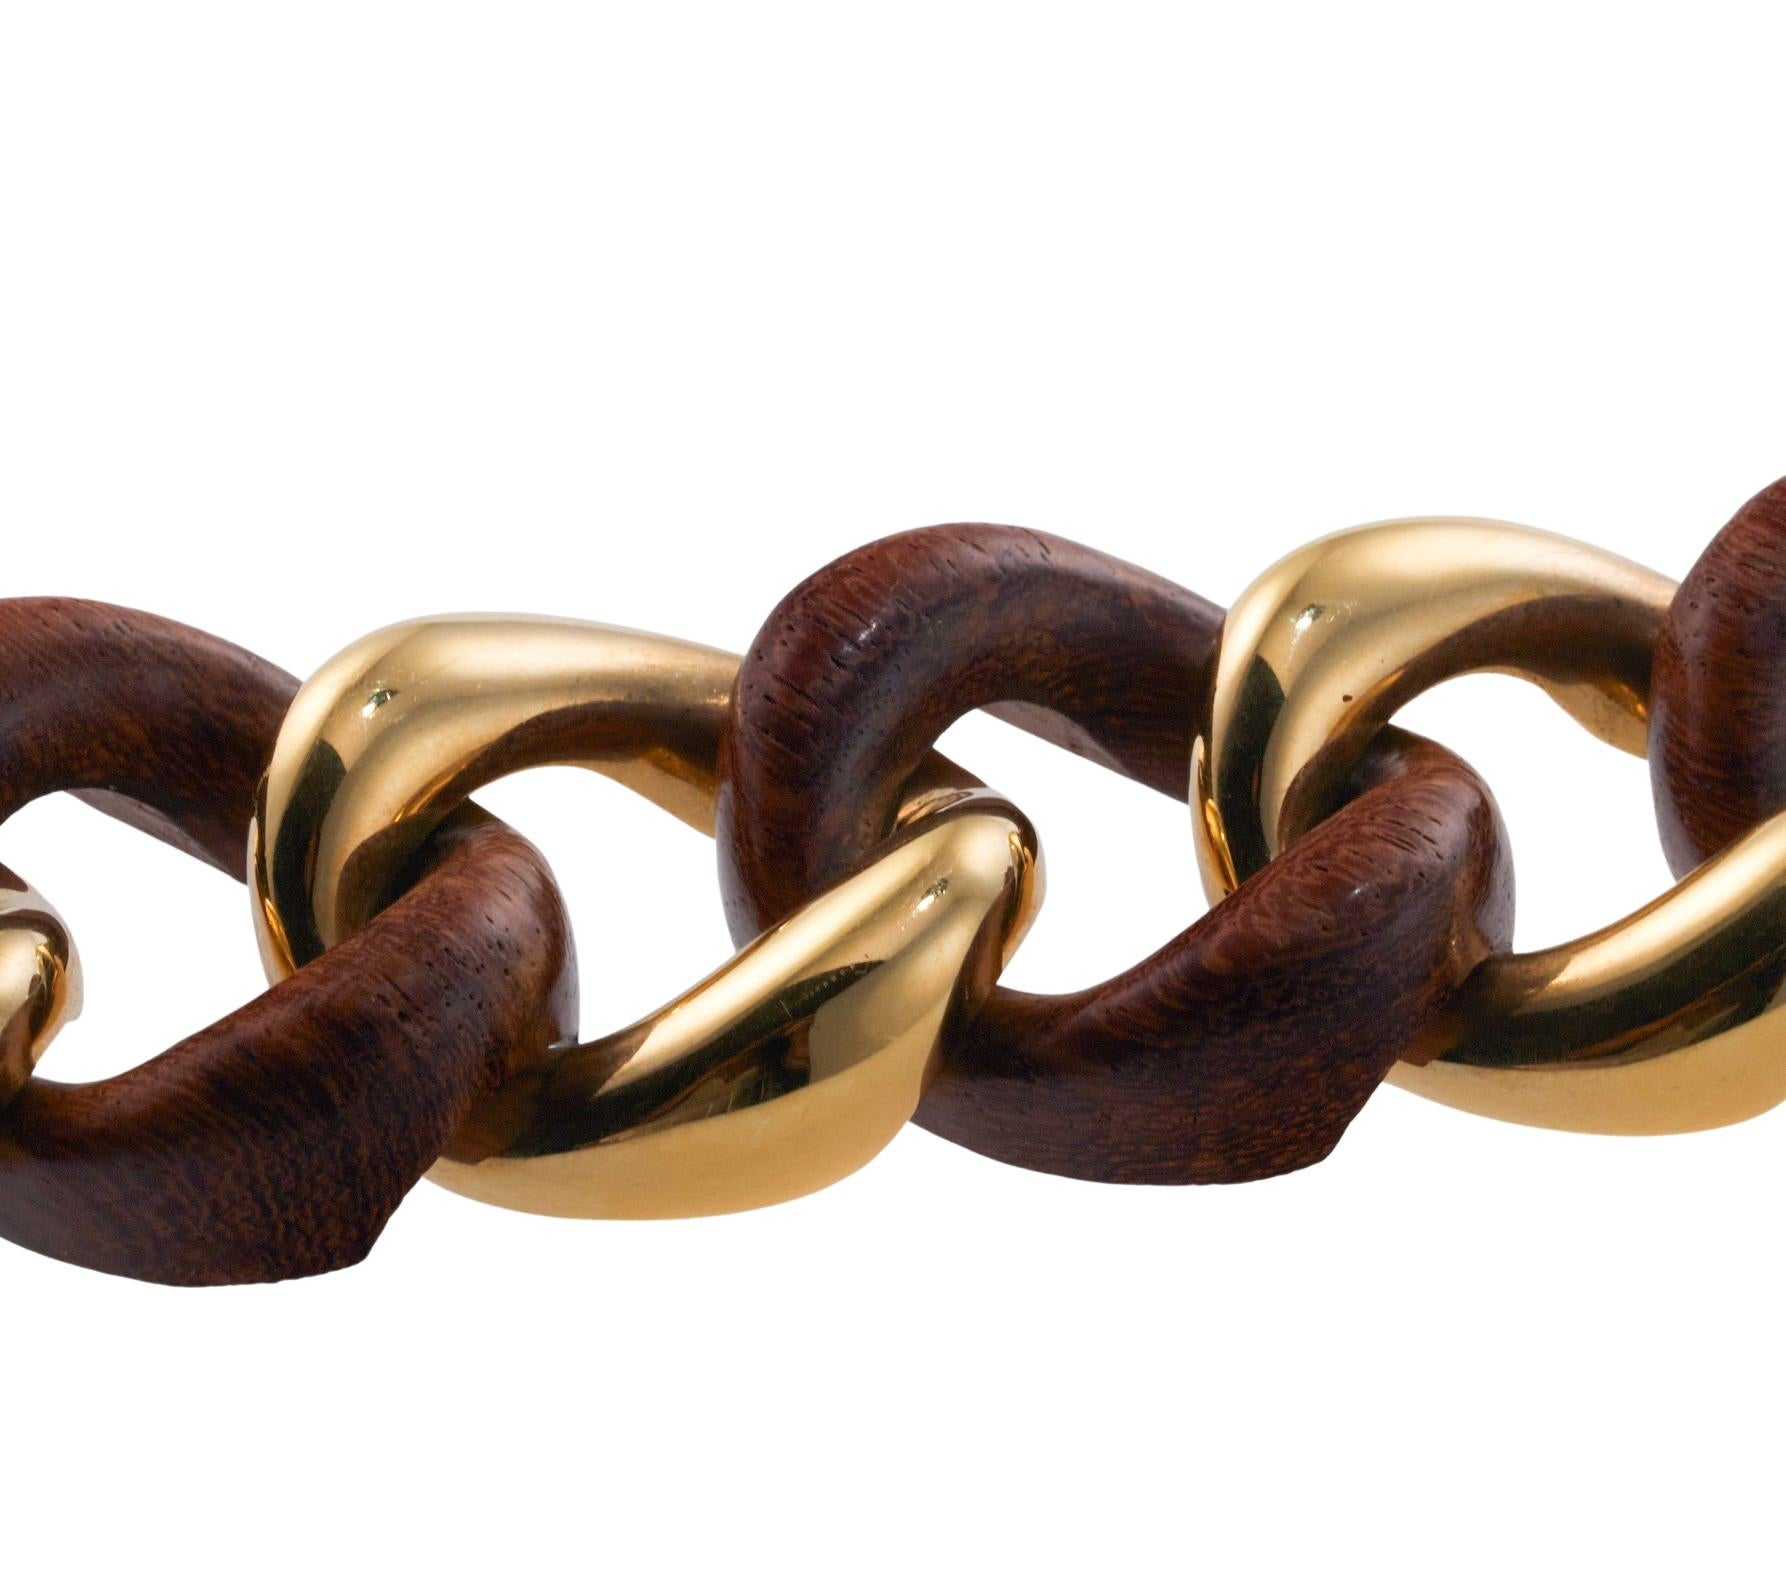 Medium link 18k gold and wood bracelet by Seaman Schepps. Bracelet measures 7 5/8